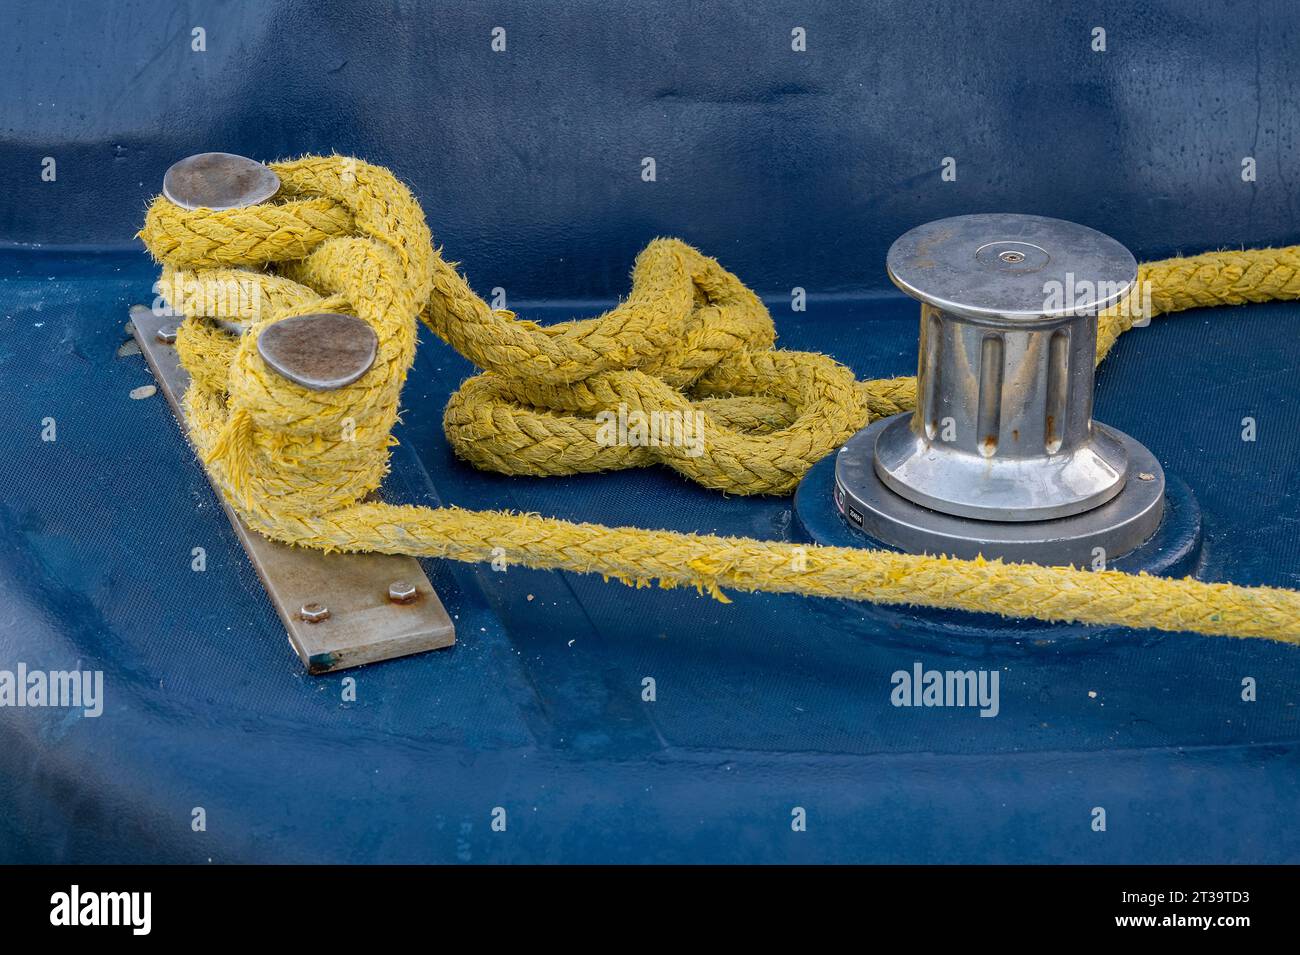 corde de yachting de couleur jaune faite rapidement attaché autour d'un taquet chromé avec un petit treuil en tôle également en chrome sur un pont de yacht à voile. Banque D'Images